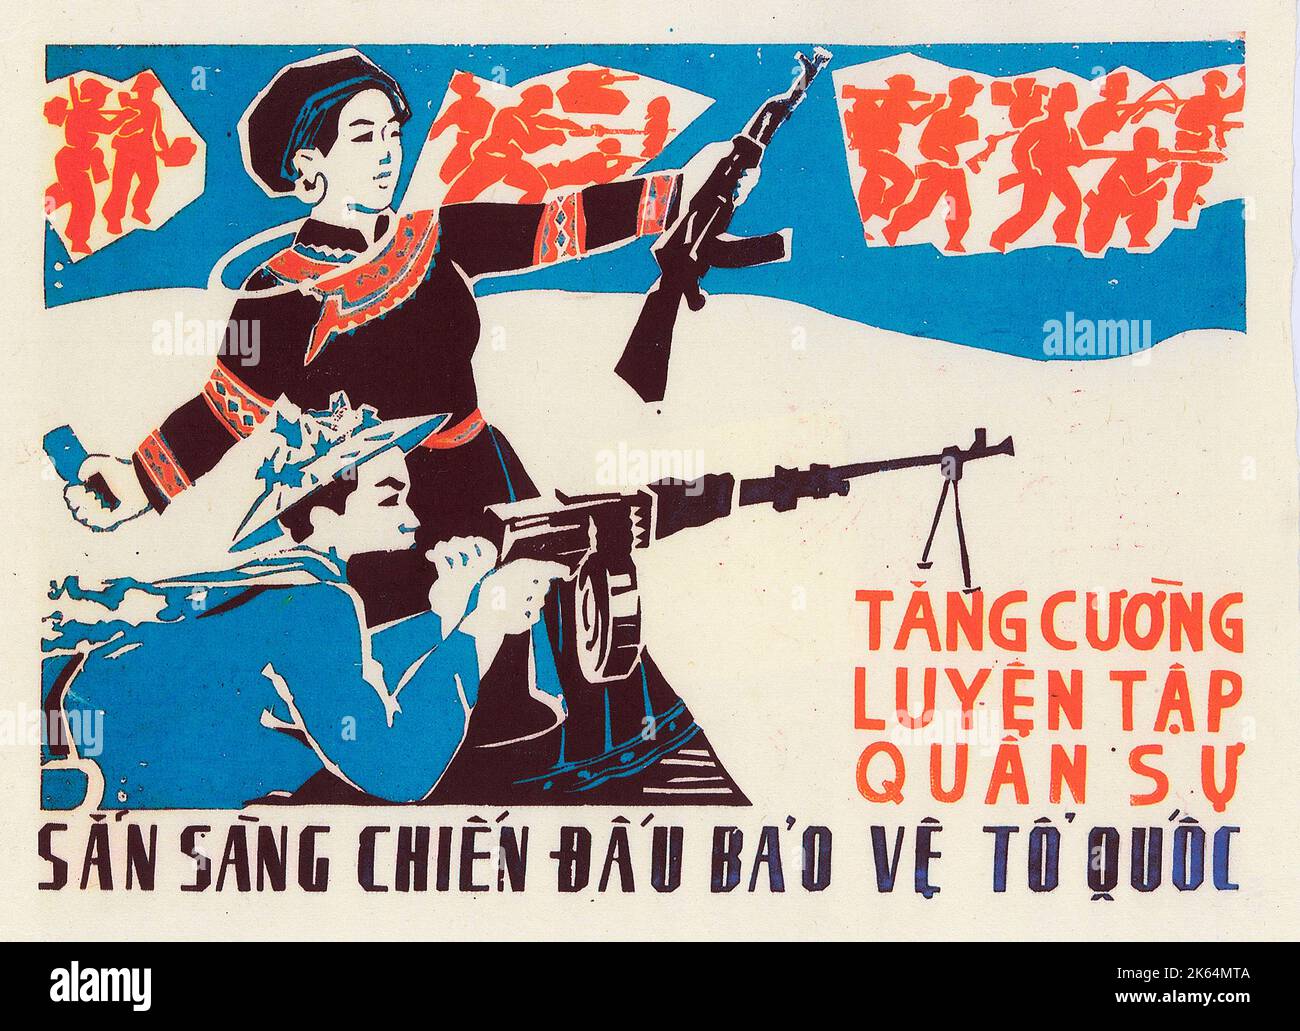 Guerre du Vietnam - affiche patriotique - 'renforcez votre entraînement militaire' - 'Préparez-vous à combattre pour défendre votre terre' Banque D'Images